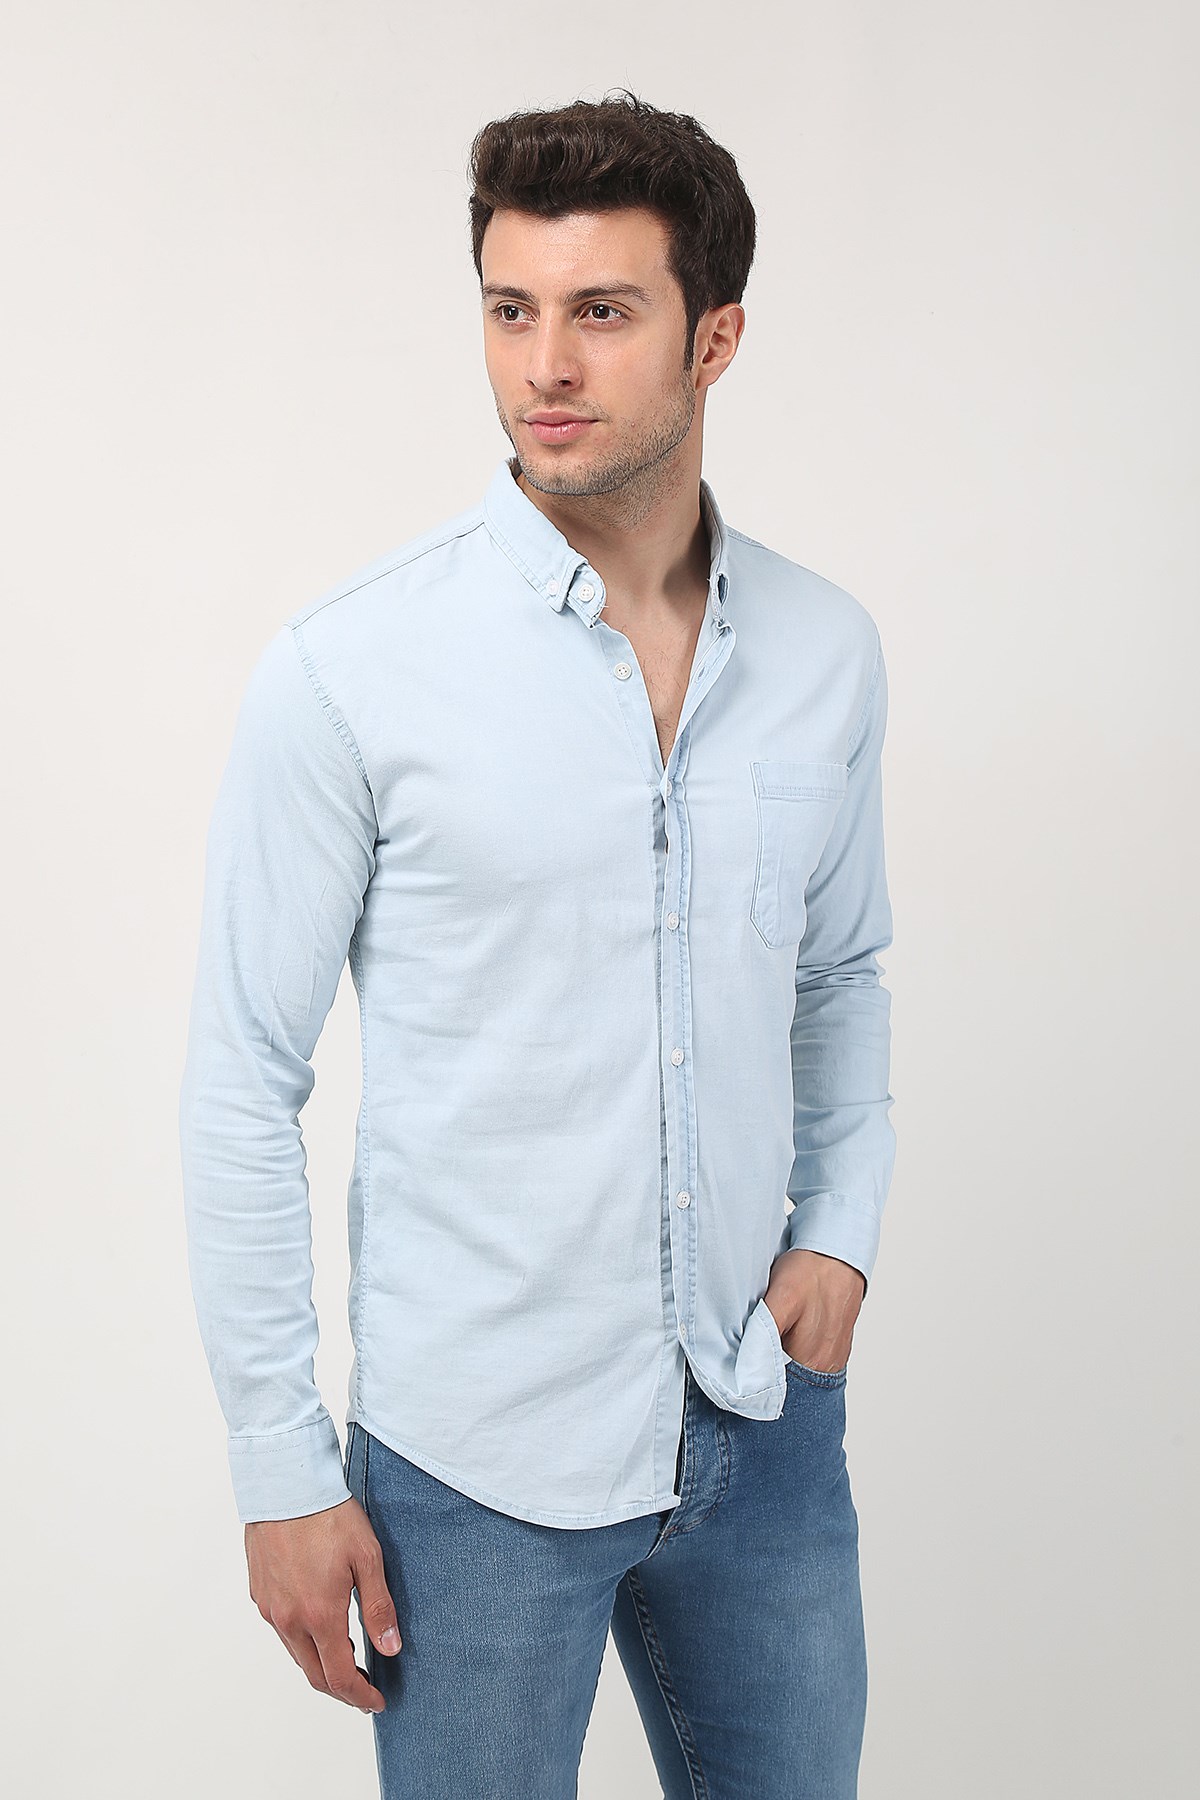 Erkek Uzun Kollu Cepli Kot Gömlek 21Y-4300589-01 Buz Mavisi | Terapi Giyim